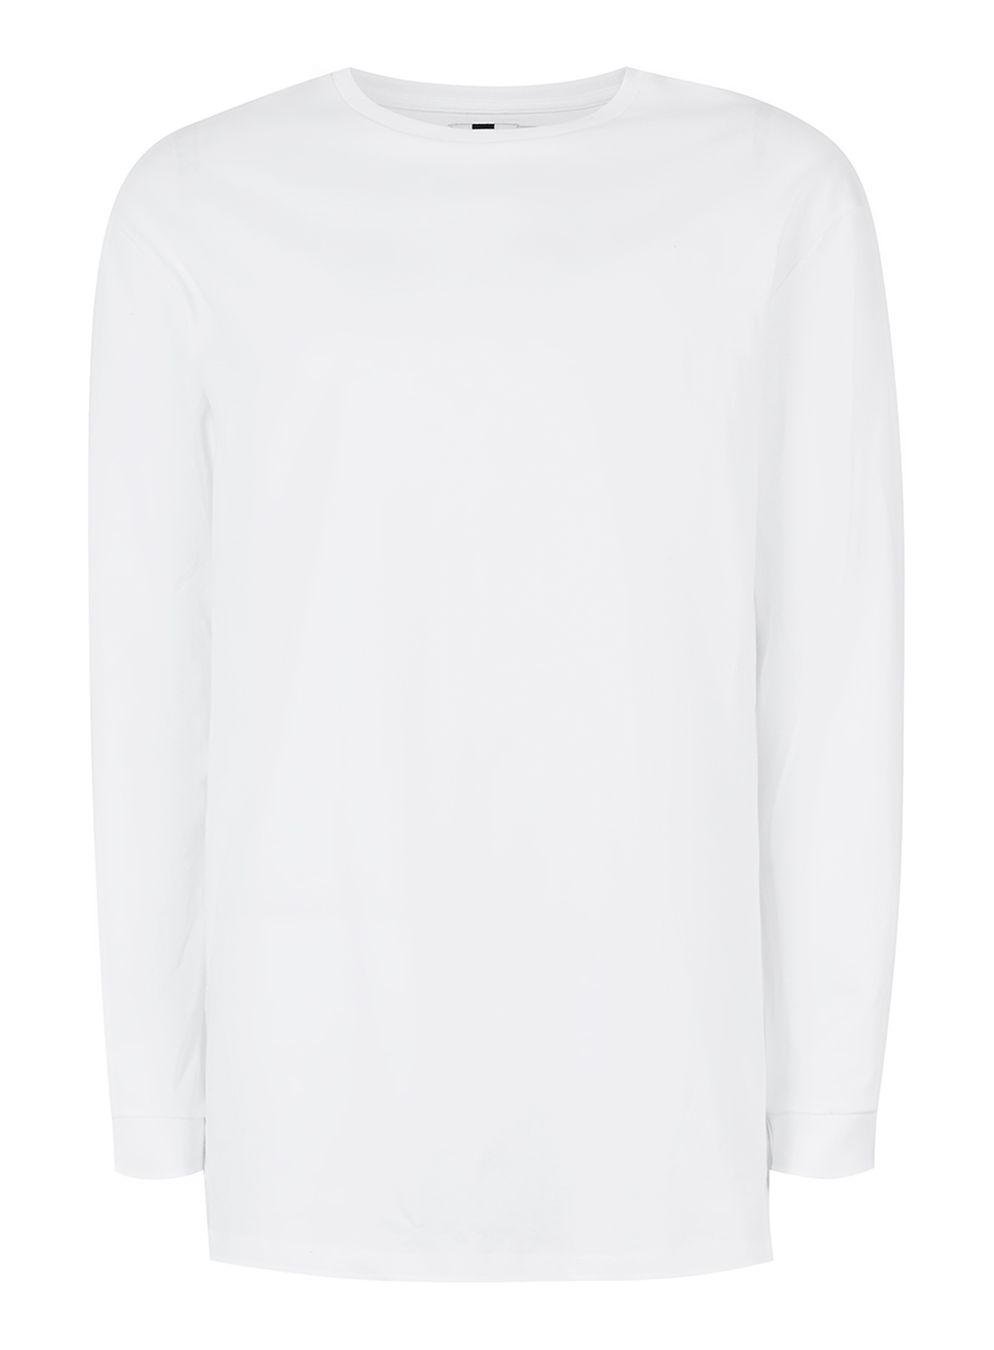 TOPMAN Cotton White Oversized Long Sleeve T-shirt for Men - Lyst